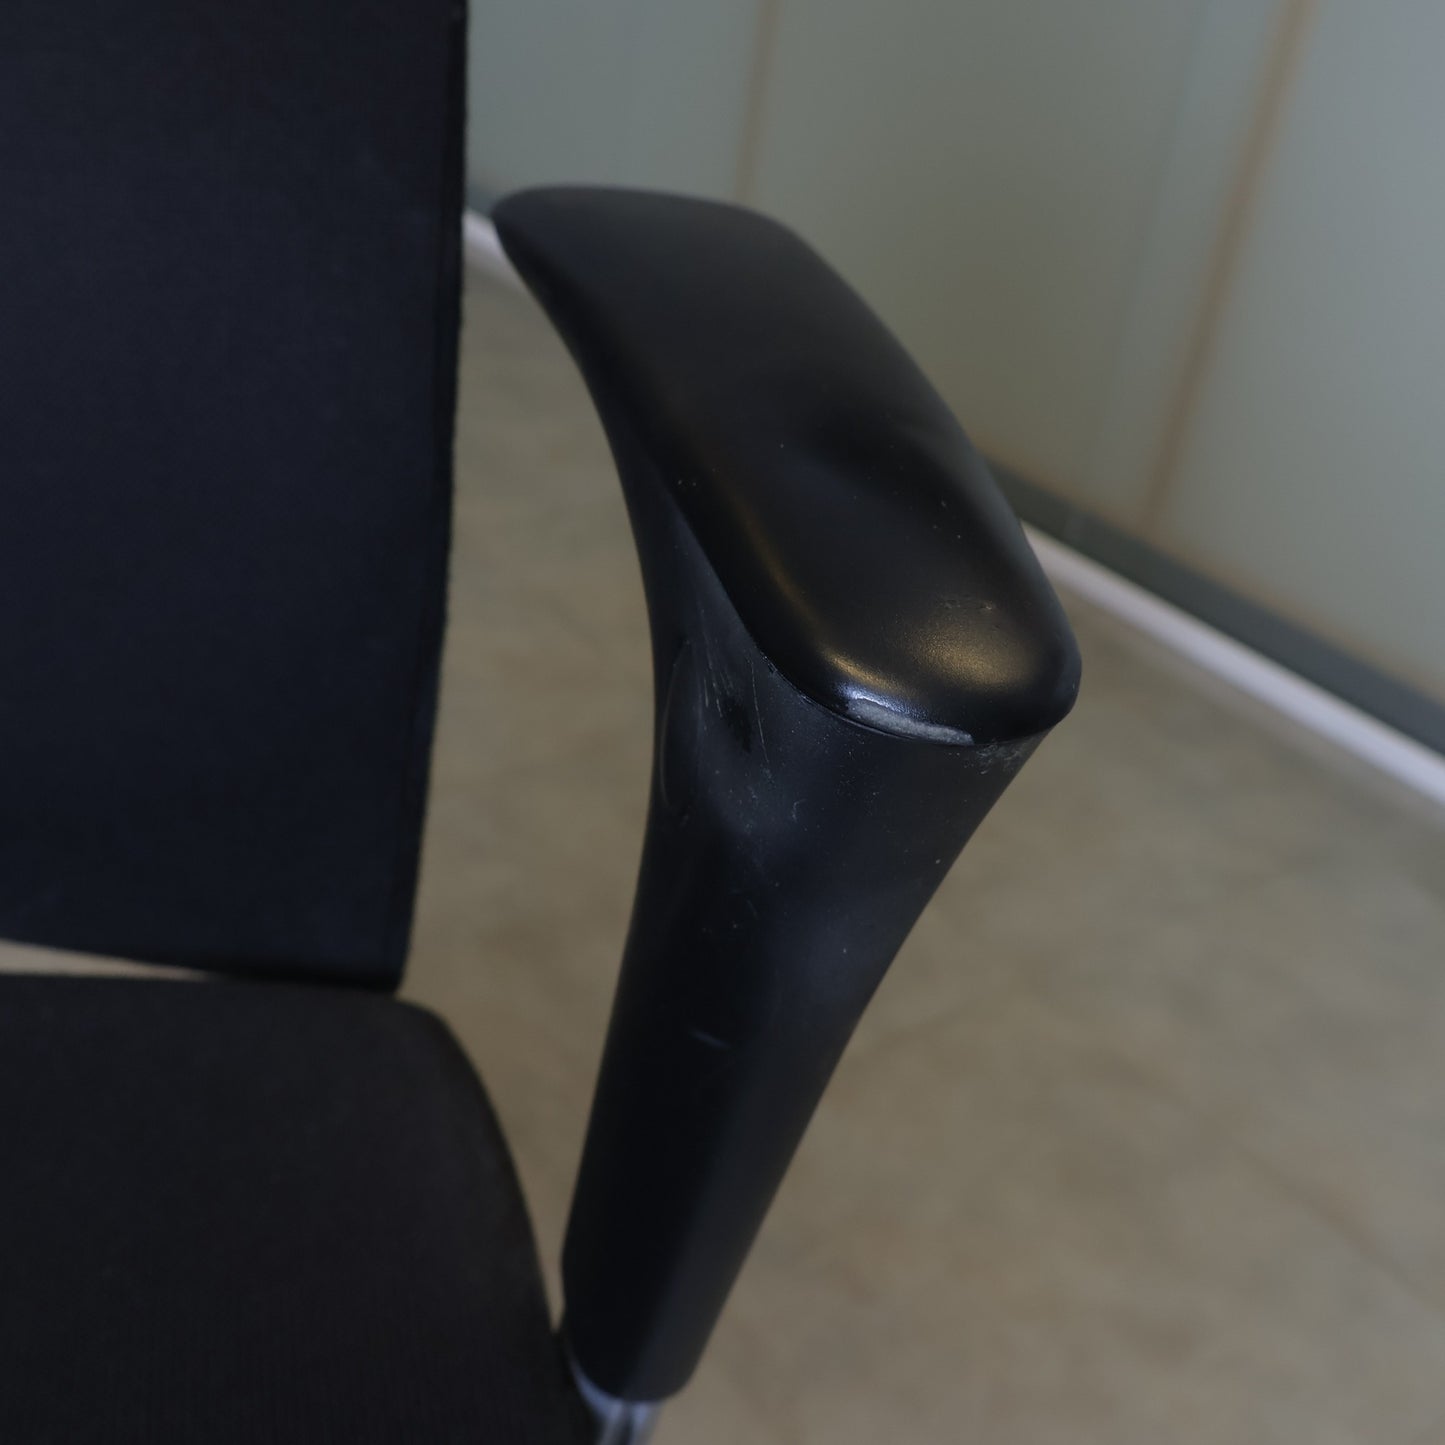 Nyrenset | Håg H04 kontorstol med nakkestøtte og justerbare armlener